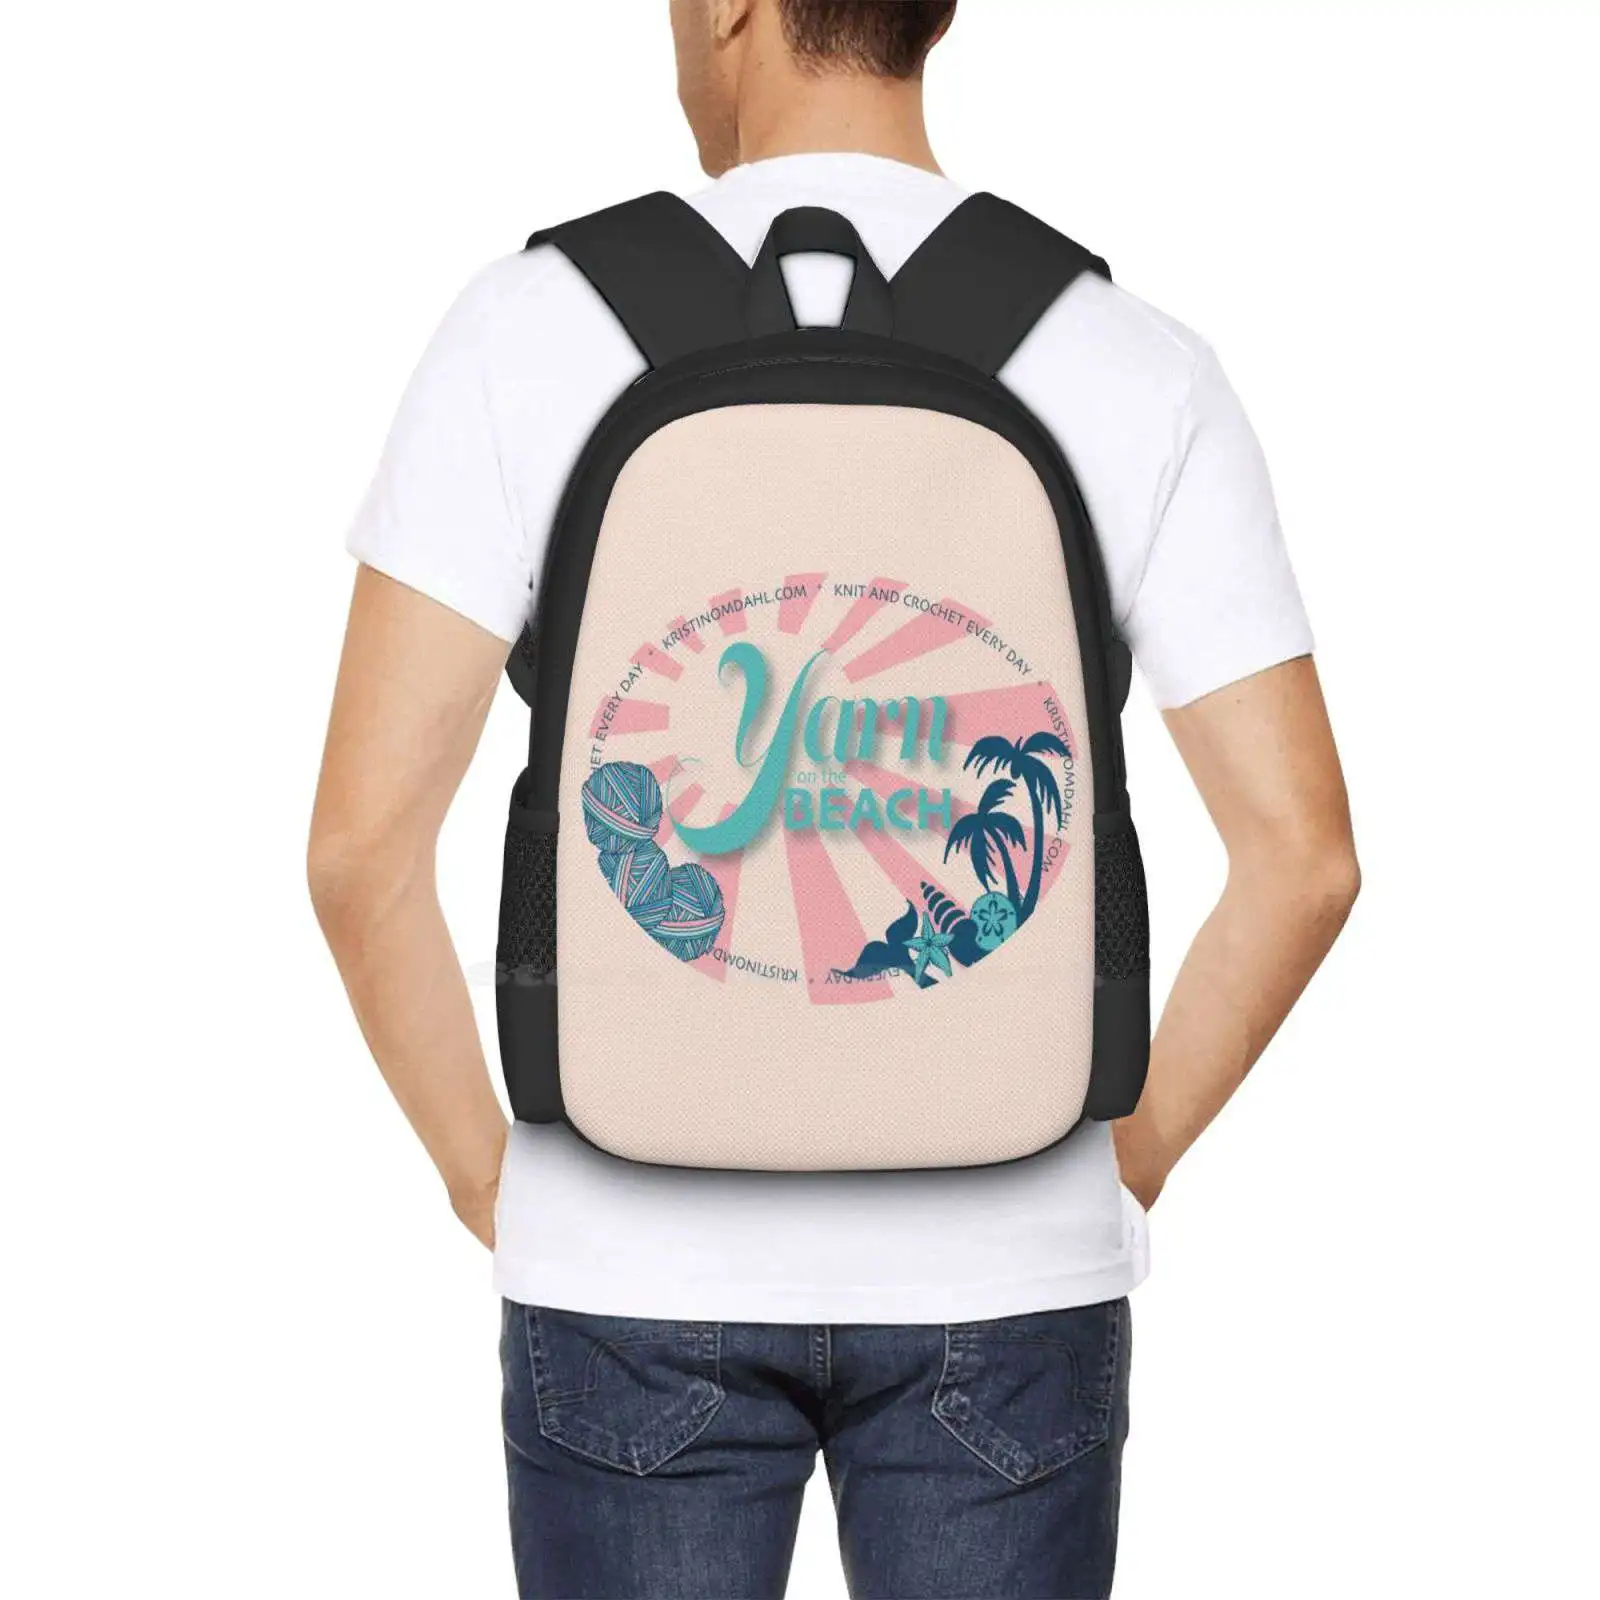 Пряжа на пляже 3D принт Дизайн Рюкзак Студенческая сумка Вязание крючком Шарики из пряжи Кристин Омдал 5